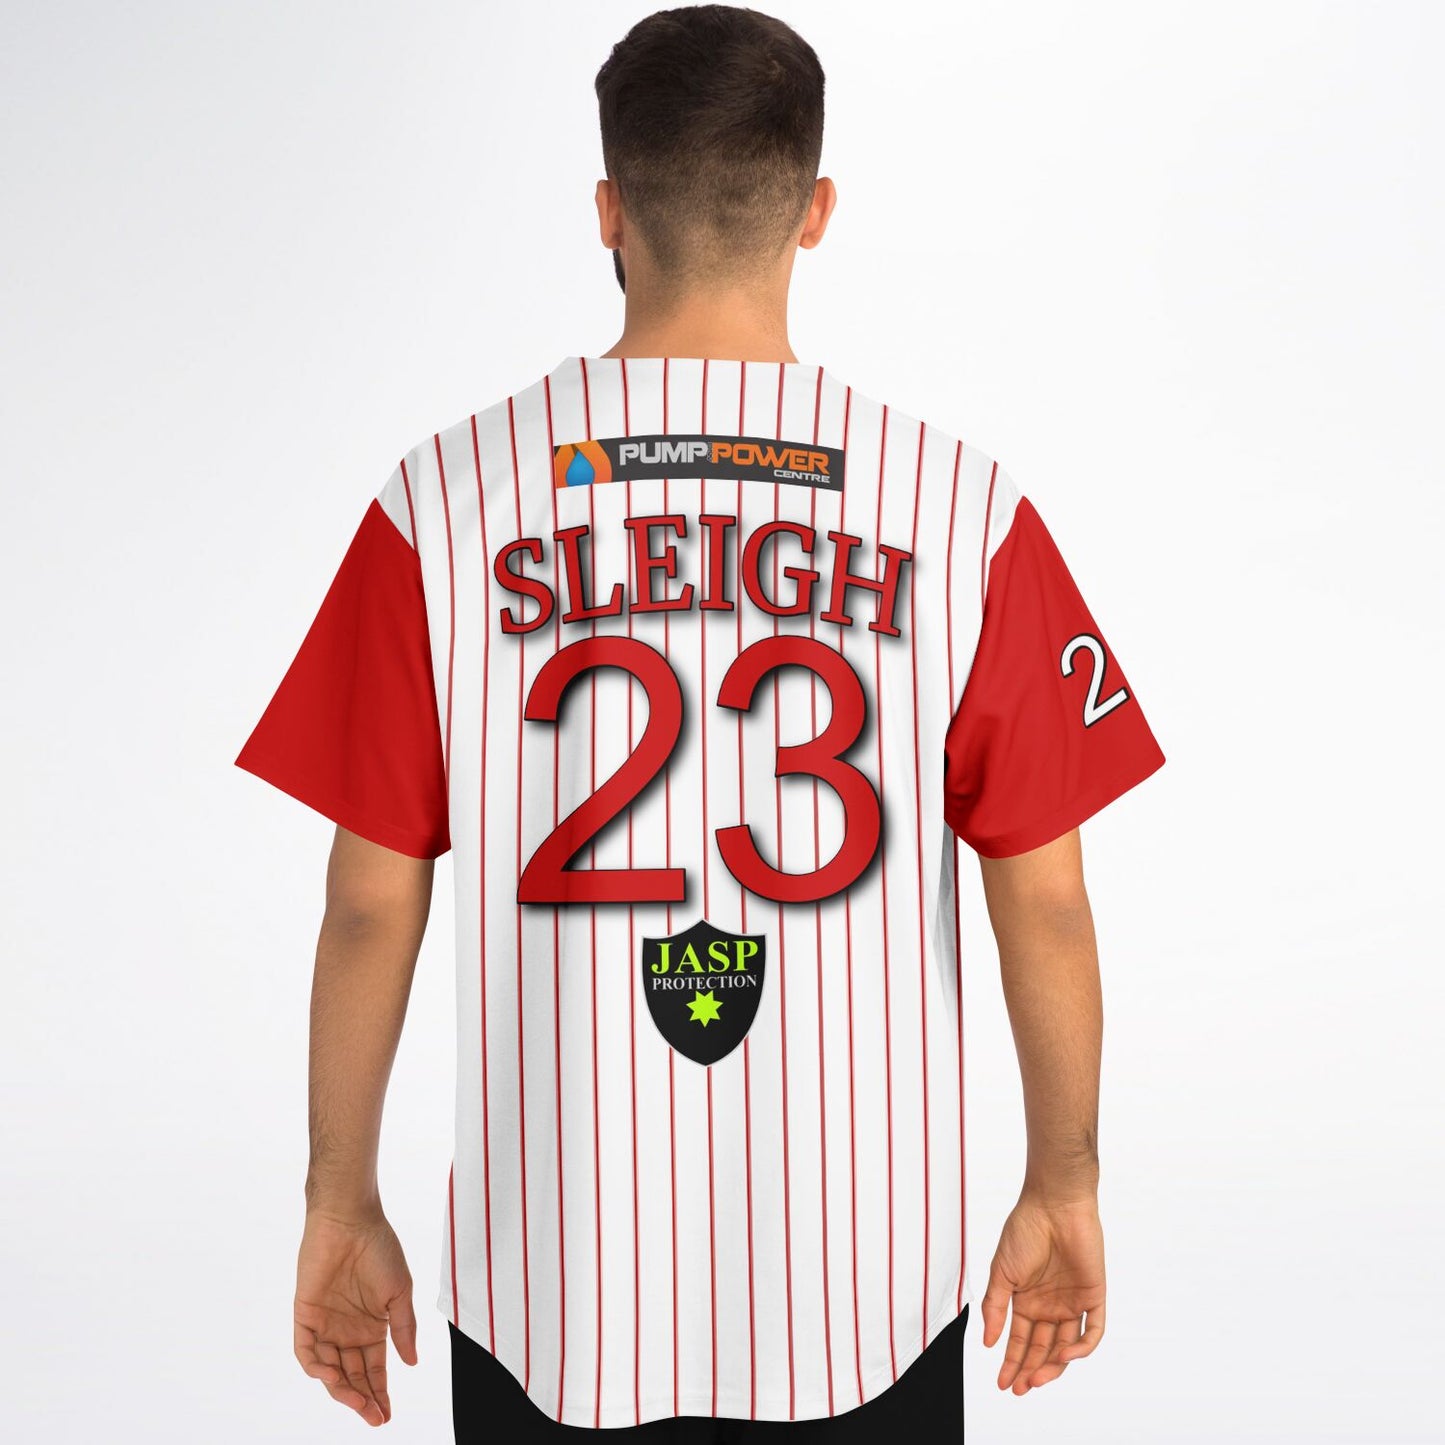 Thomas Sleigh #23 Demons Baseball Jersey - Home